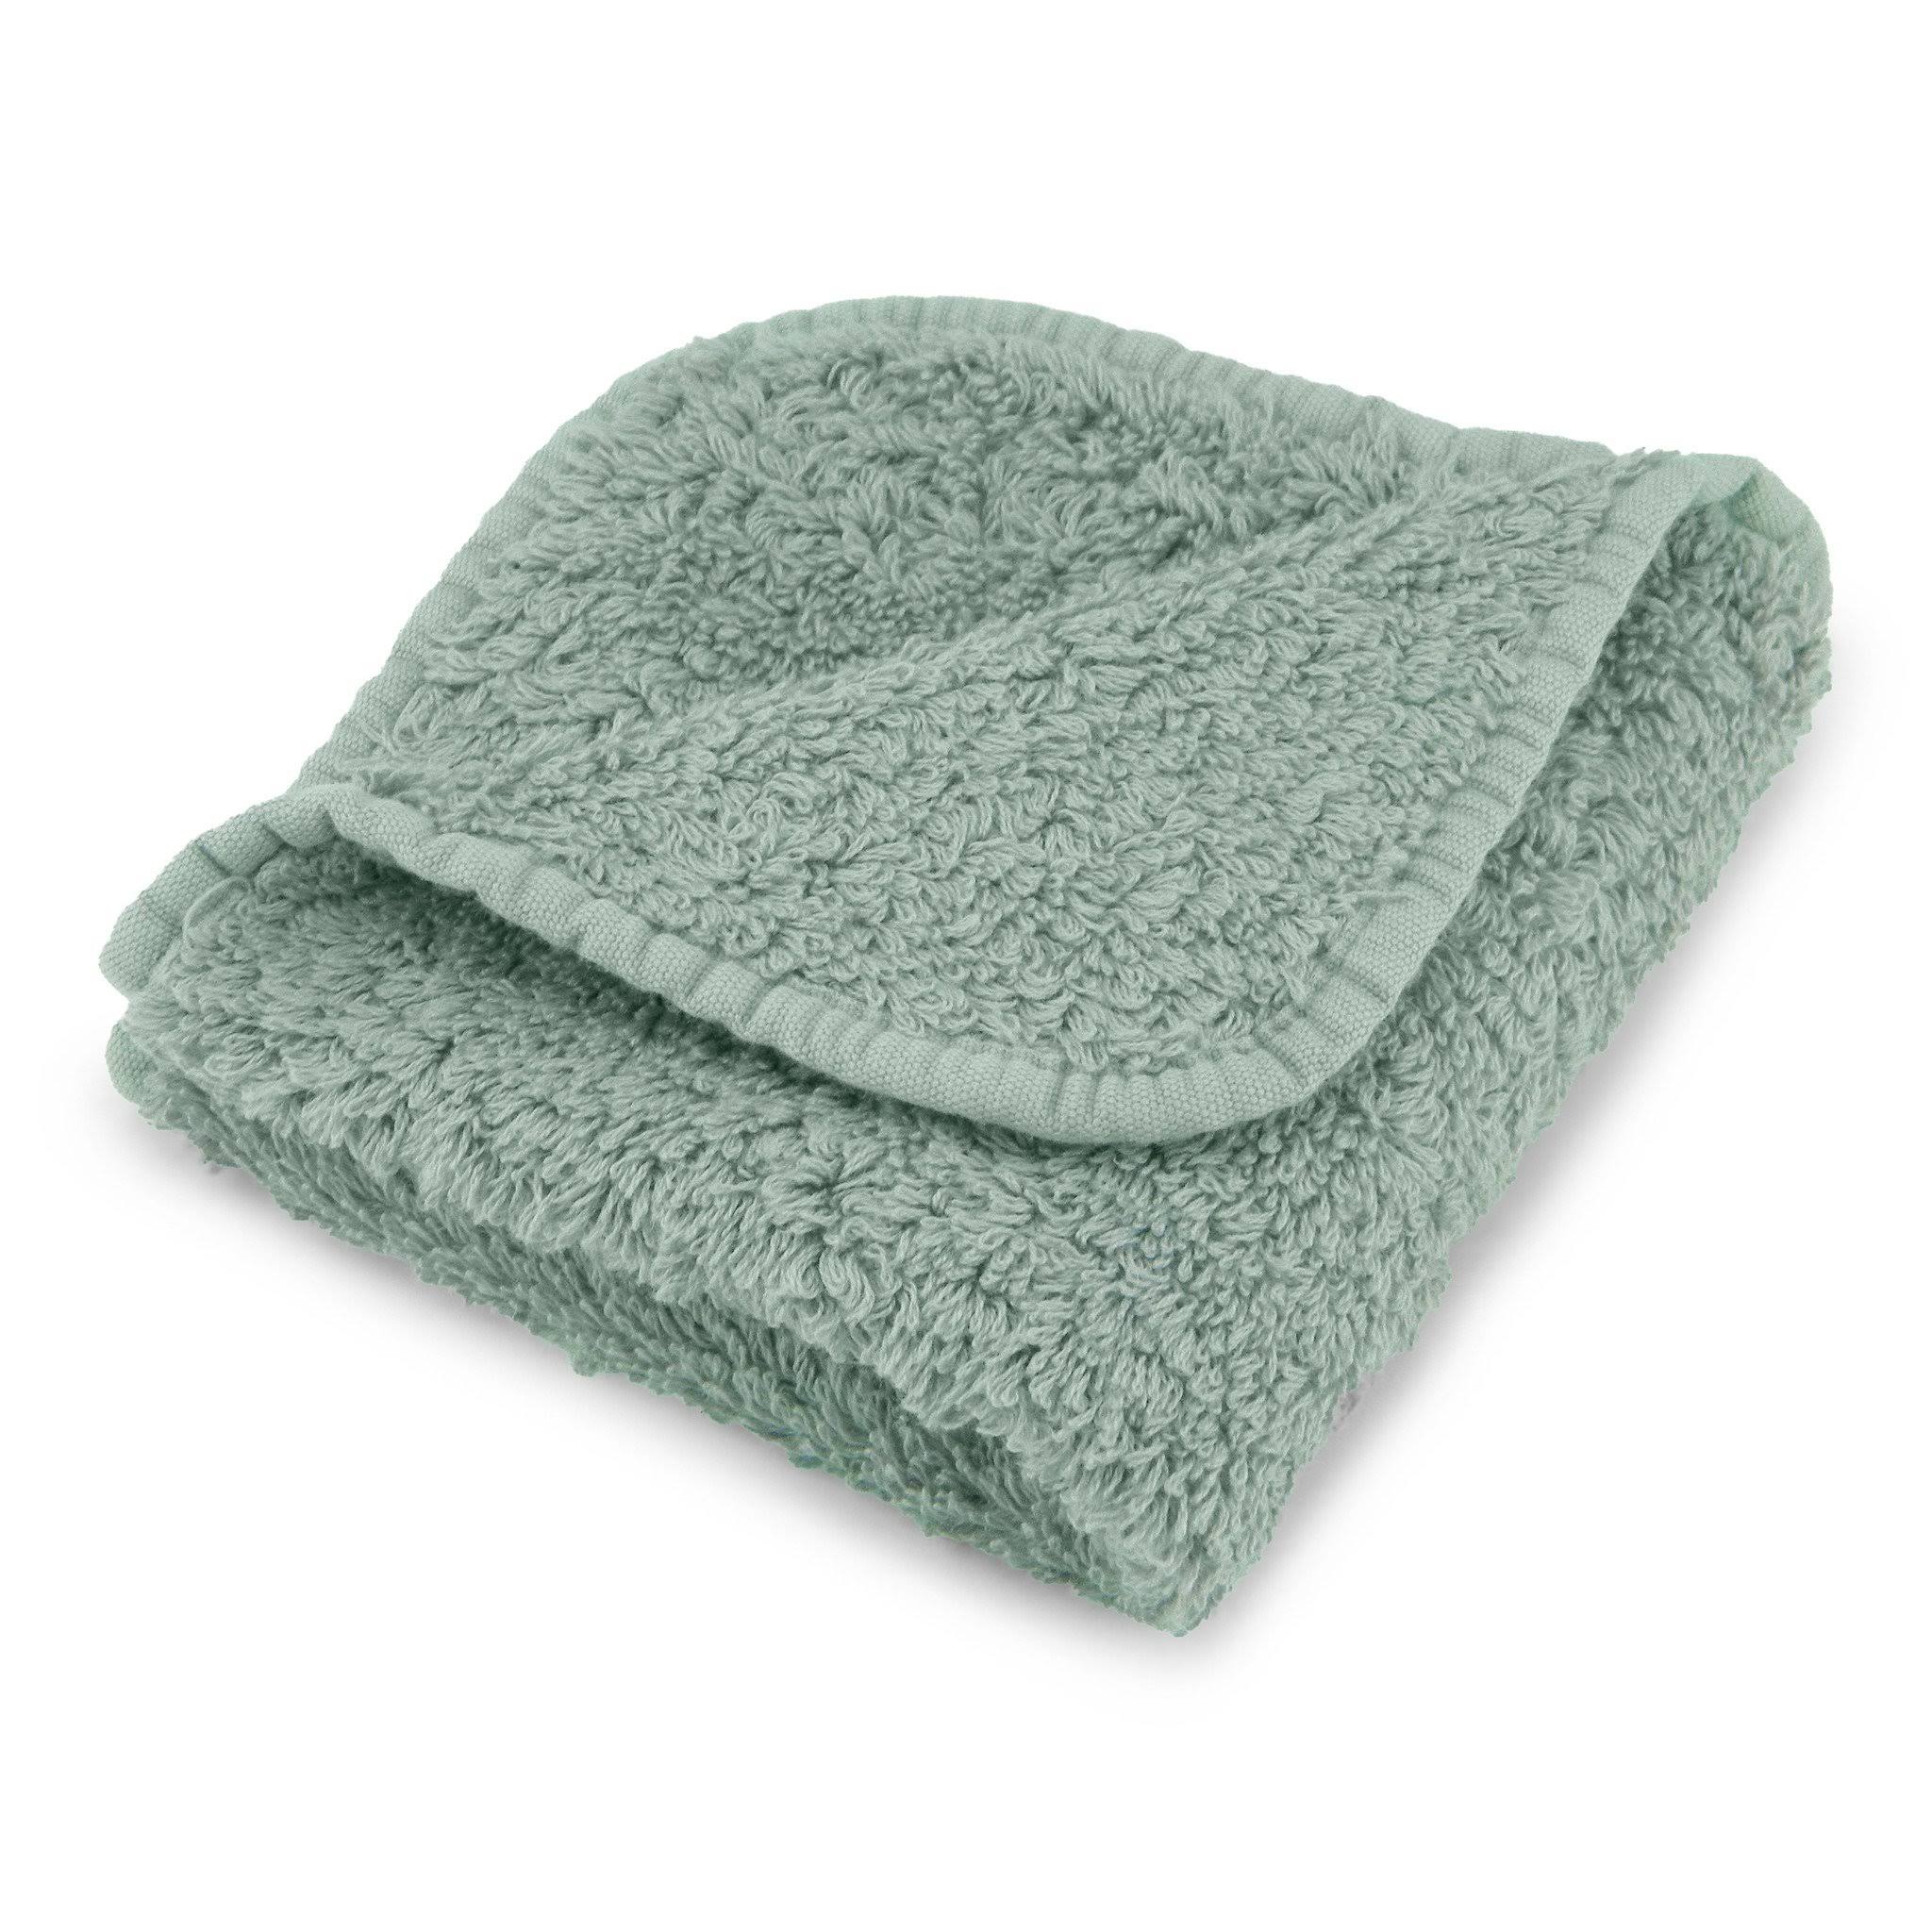 Abyss Super Pile Towels - Hand Towel 17x30" Aqua 210